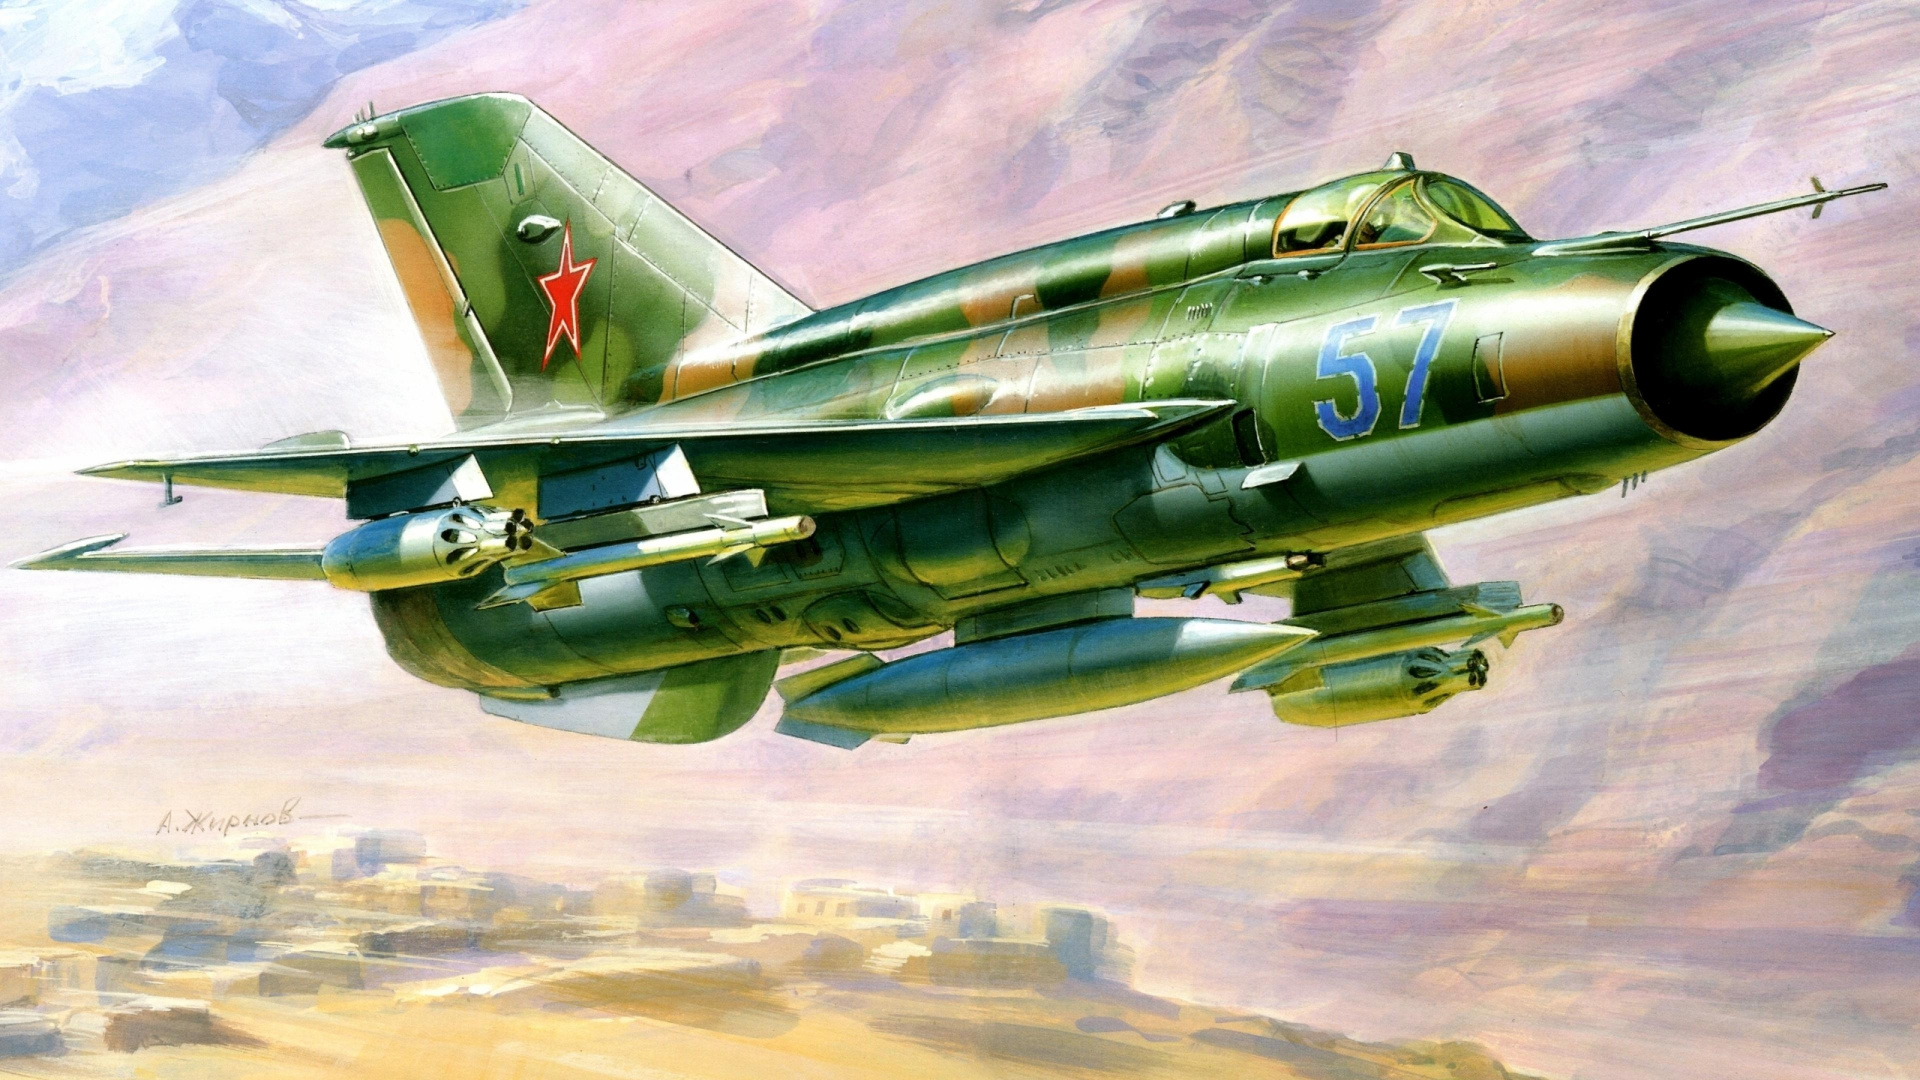 喷气式飞机, 航空, 军用飞机, 空军, 高扬古列维奇mig17 壁纸 1920x1080 允许